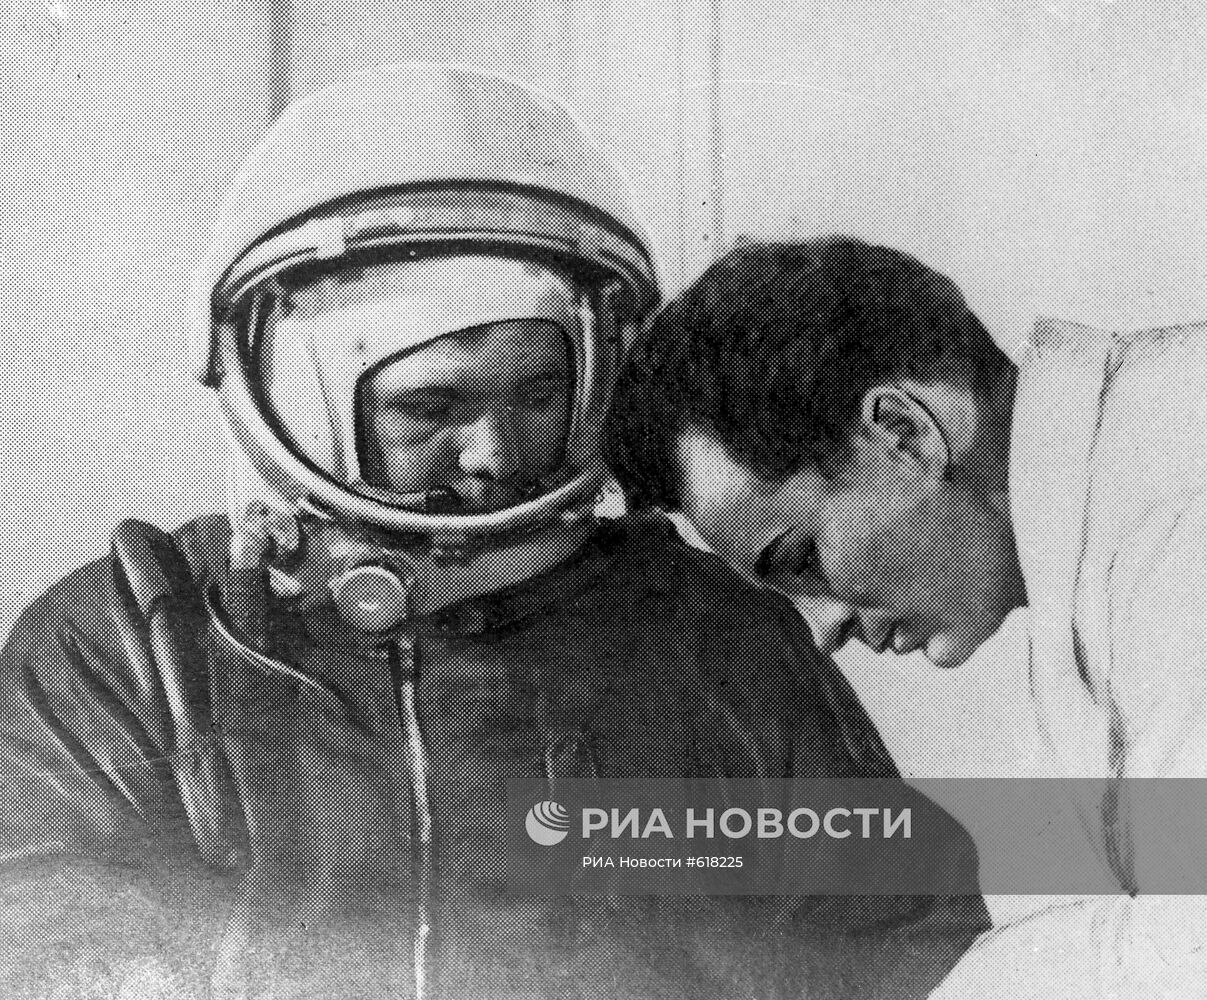 Юрий Гагарин перед историческим полетом в космос